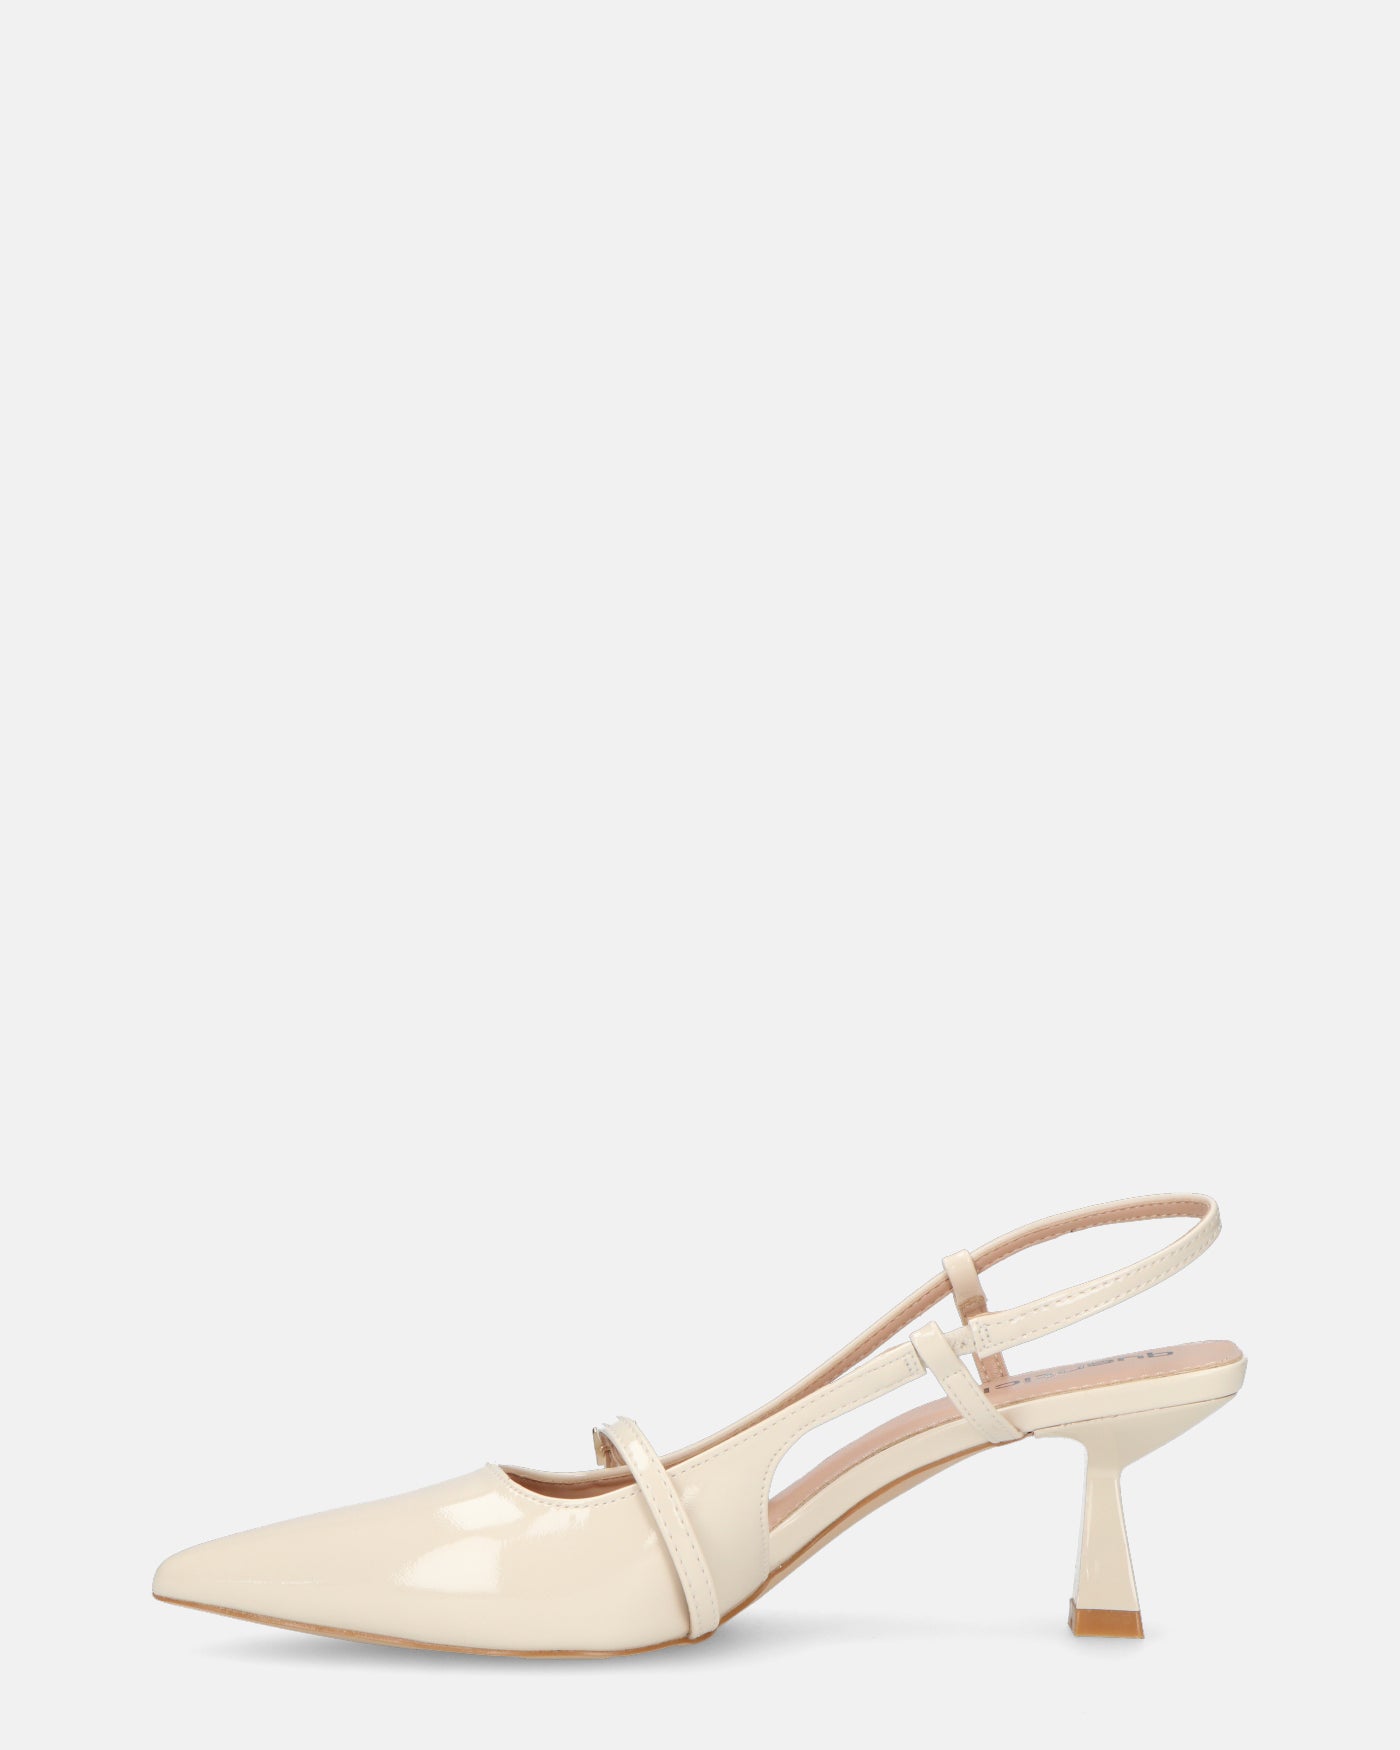 FARAI - sandali in glassy beige chiaro con tacco e cinturino